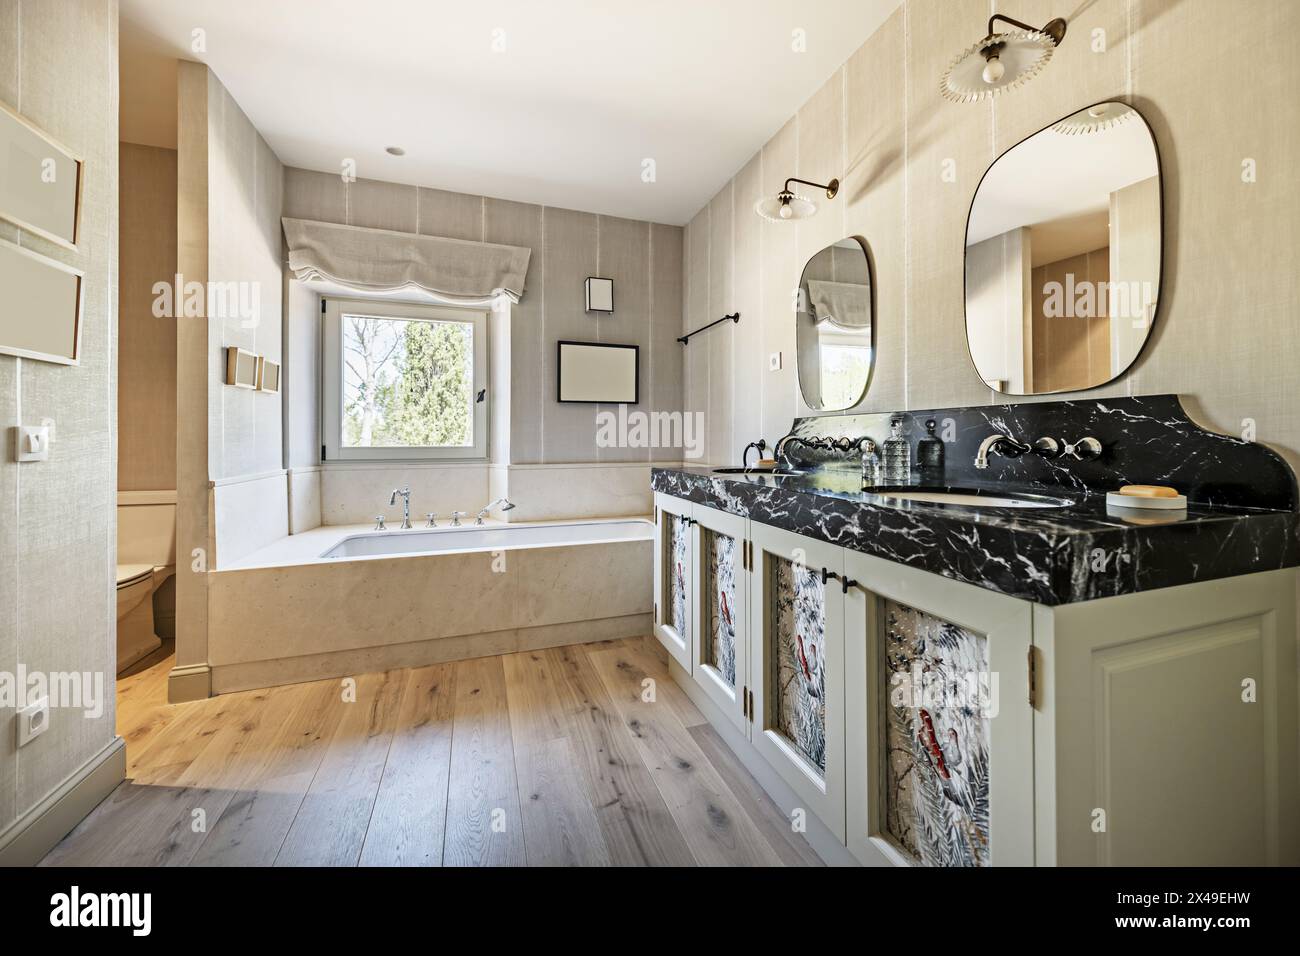 Un ampio bagno con mobili in legno con doppio lavabo, marmo nero, due specchi e una vasca con rubinetti in stile vintage e windo bianco in alluminio Foto Stock